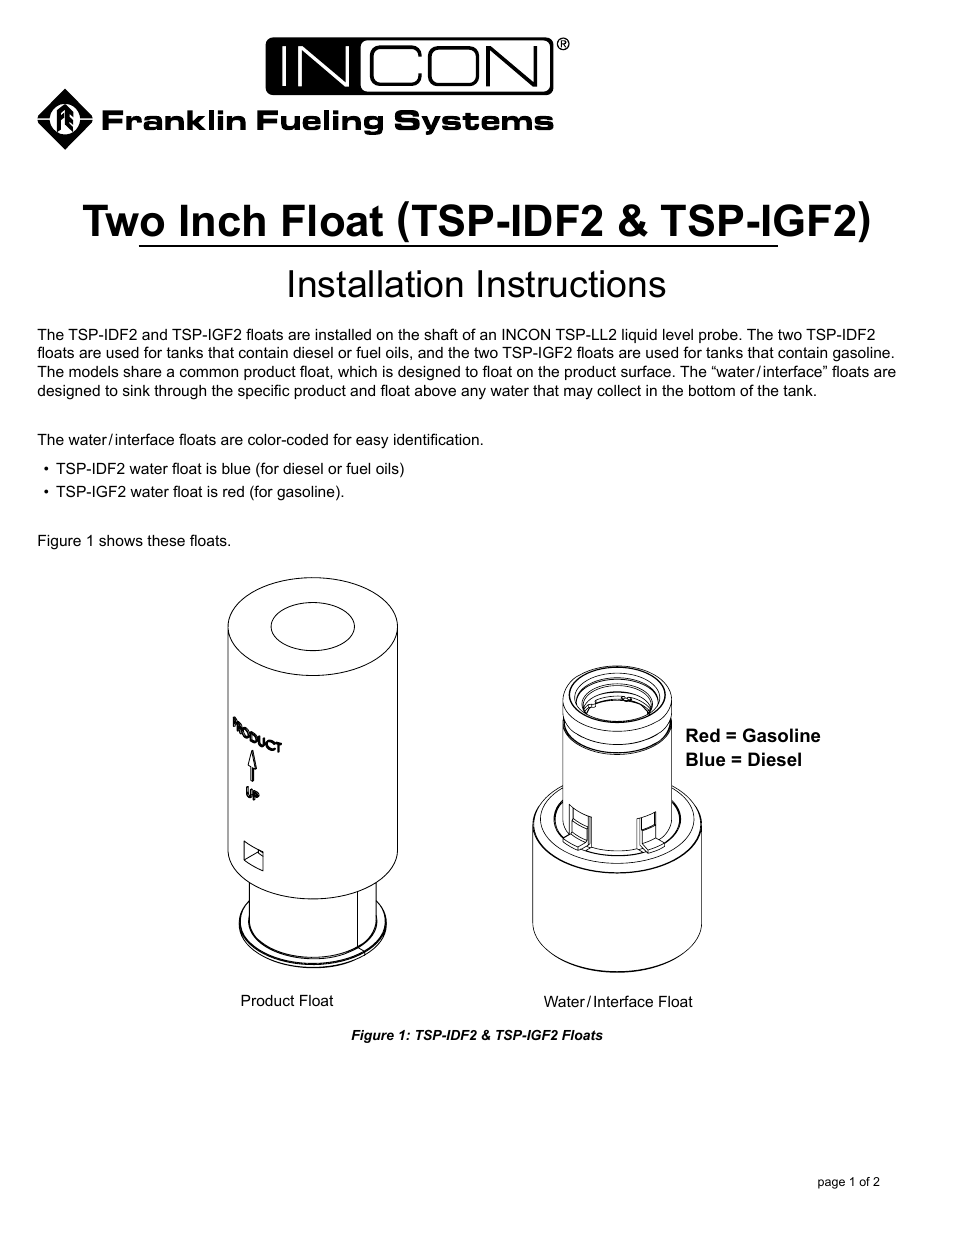 TSP-IGF2 Two Inch Floats